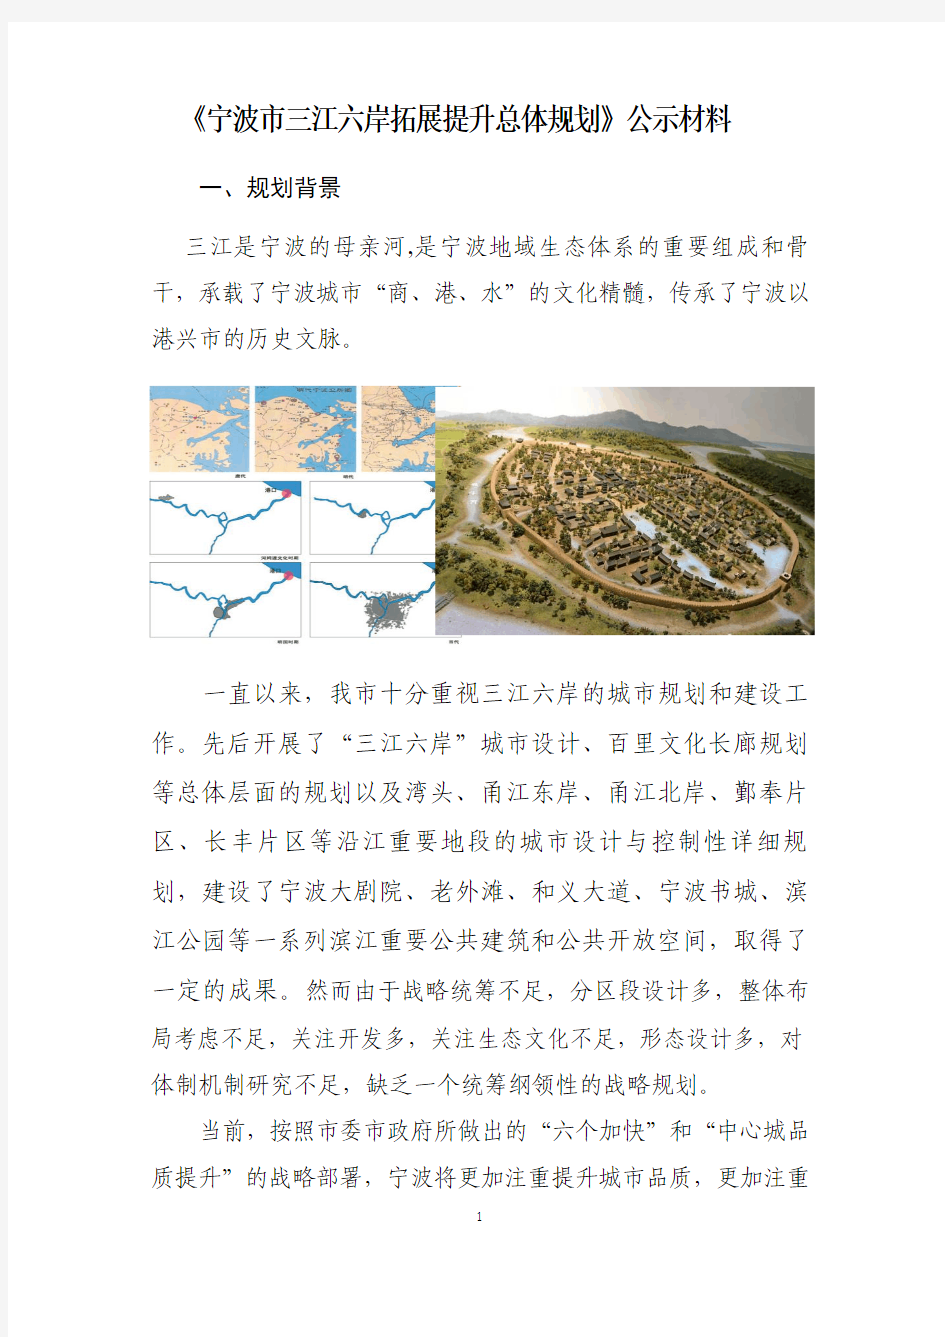 宁波三江六岸拓展提升总体规划公示材料